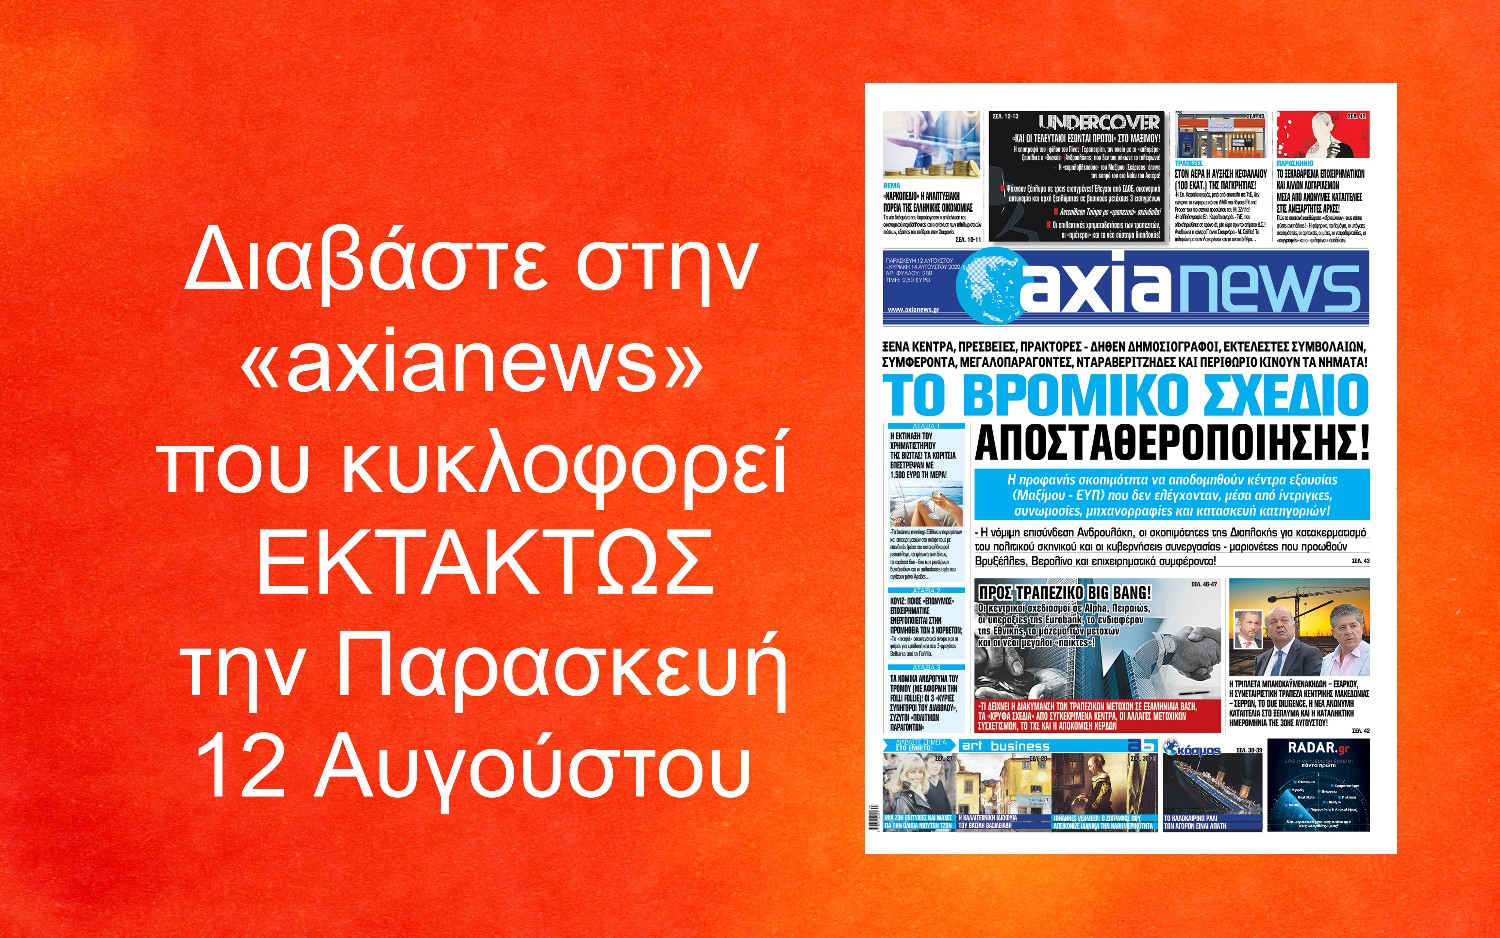 Το βρόμικο σχέδιο αποσταθεροποίησης: Διαβάστε στην «axianews» που κυκλοφορεί ΕΚΤΑΚΤΩΣ την Παρασκευή 12 Αυγούστου